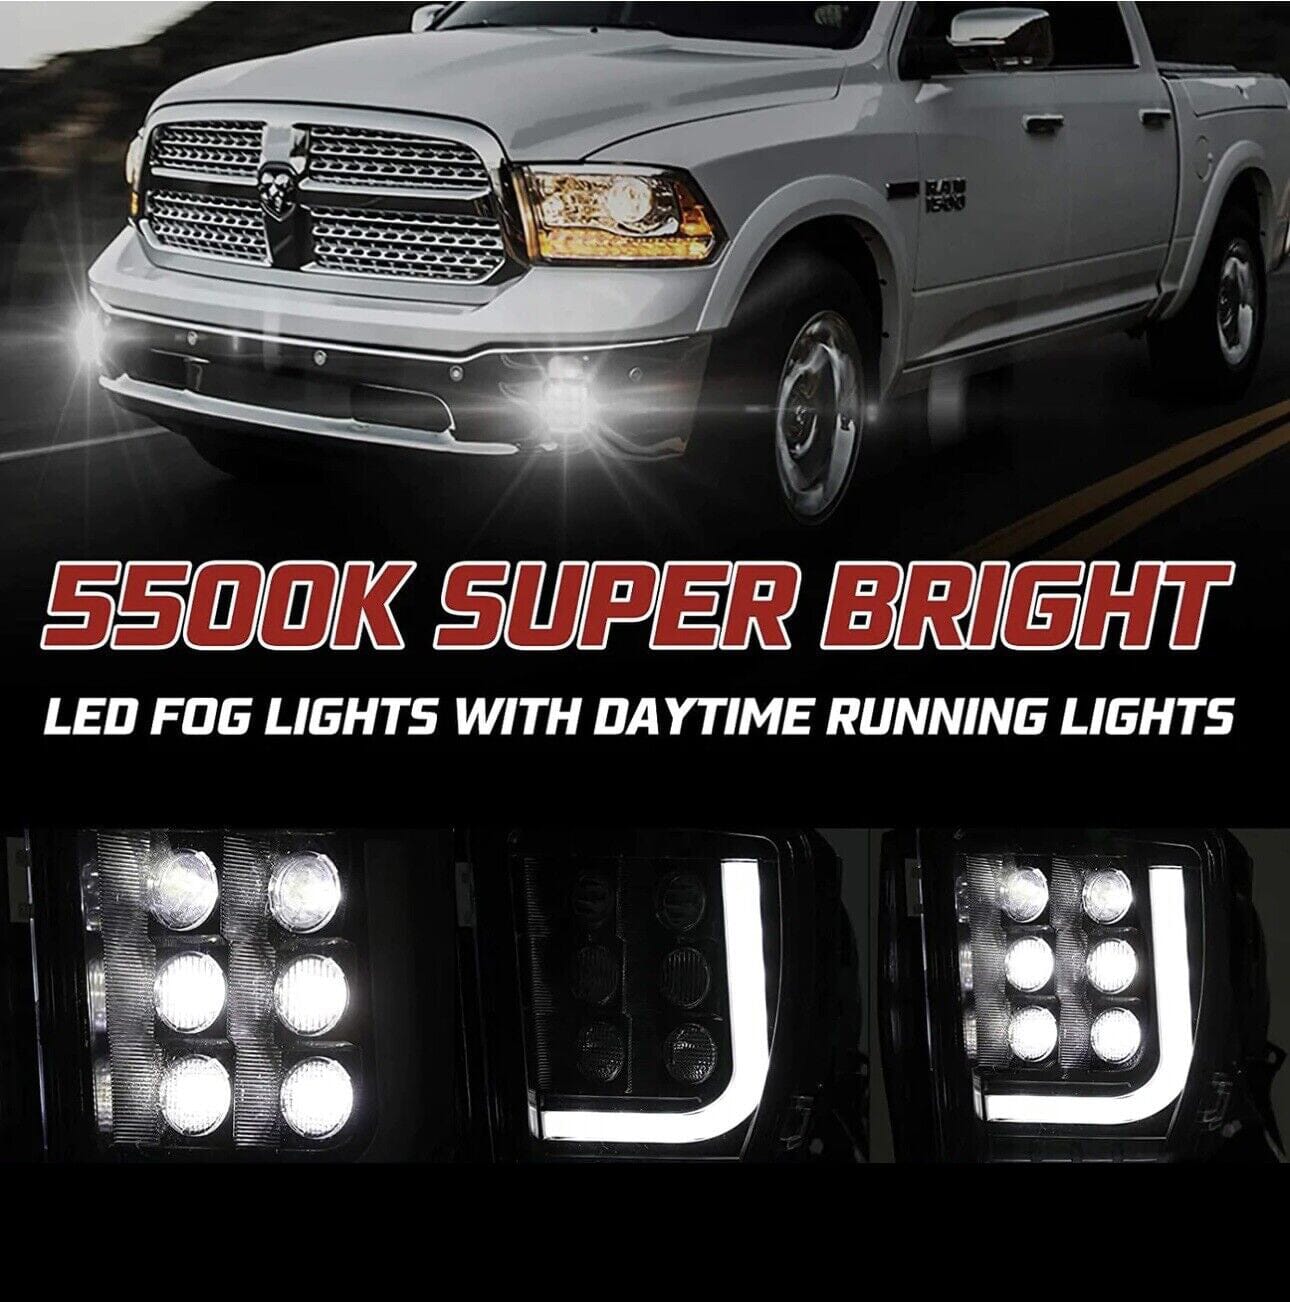 LED Fog Lights with DRL For 2013-2018 Dodge Ram 1500